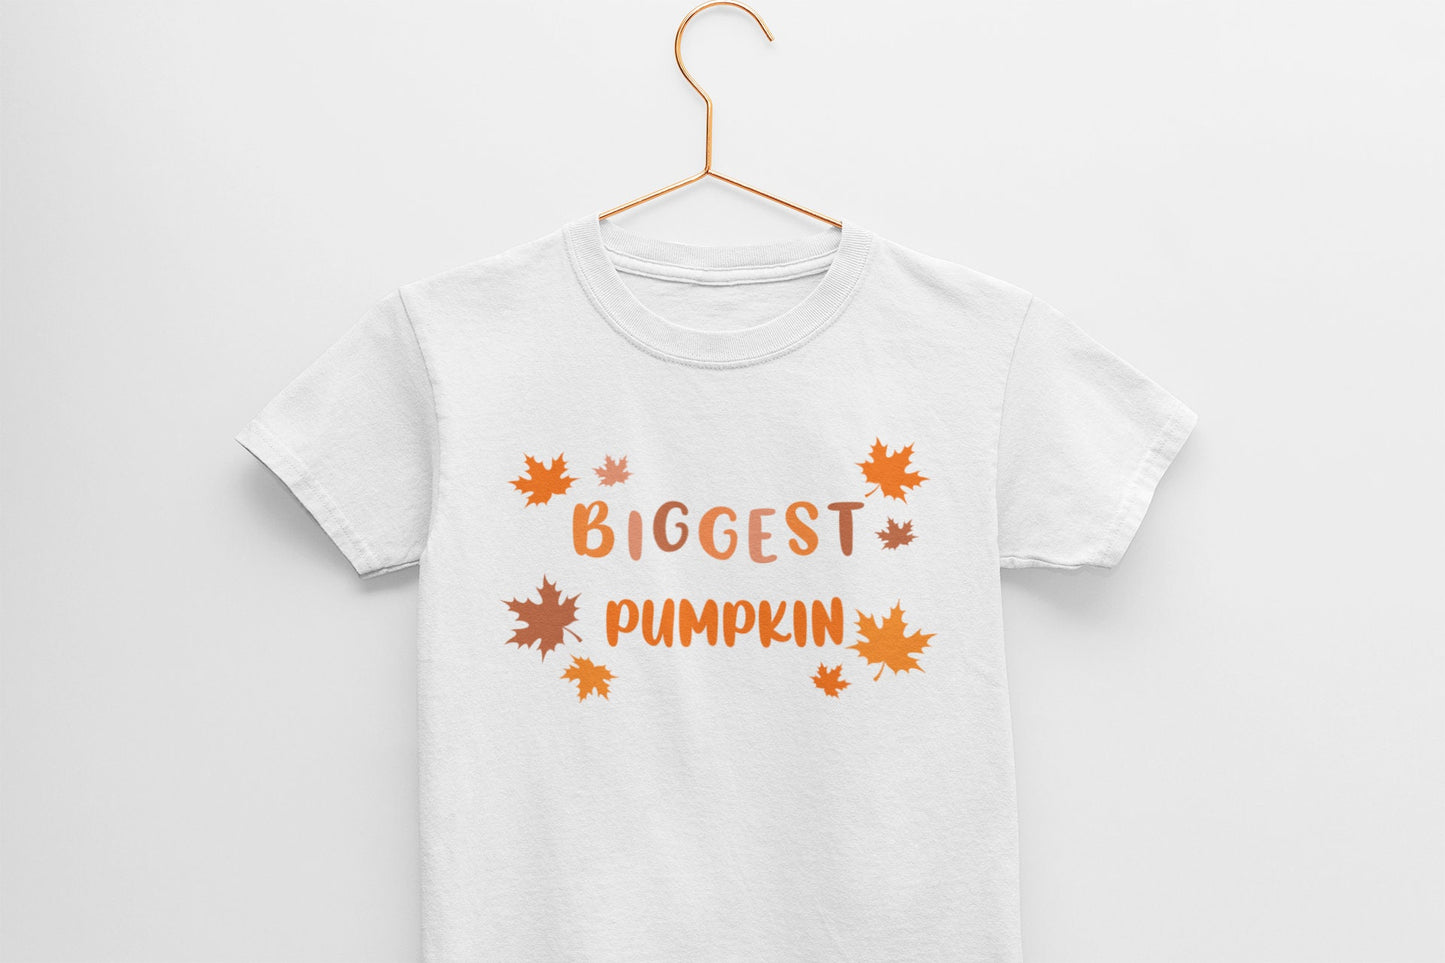 Little Pumpkin, Big Pumpkin, Biggest Pumpkin Baby bodysuit, Custom Halloween Sibling Pack T-shirt, Autumn, Fall, Sister/brother shirts